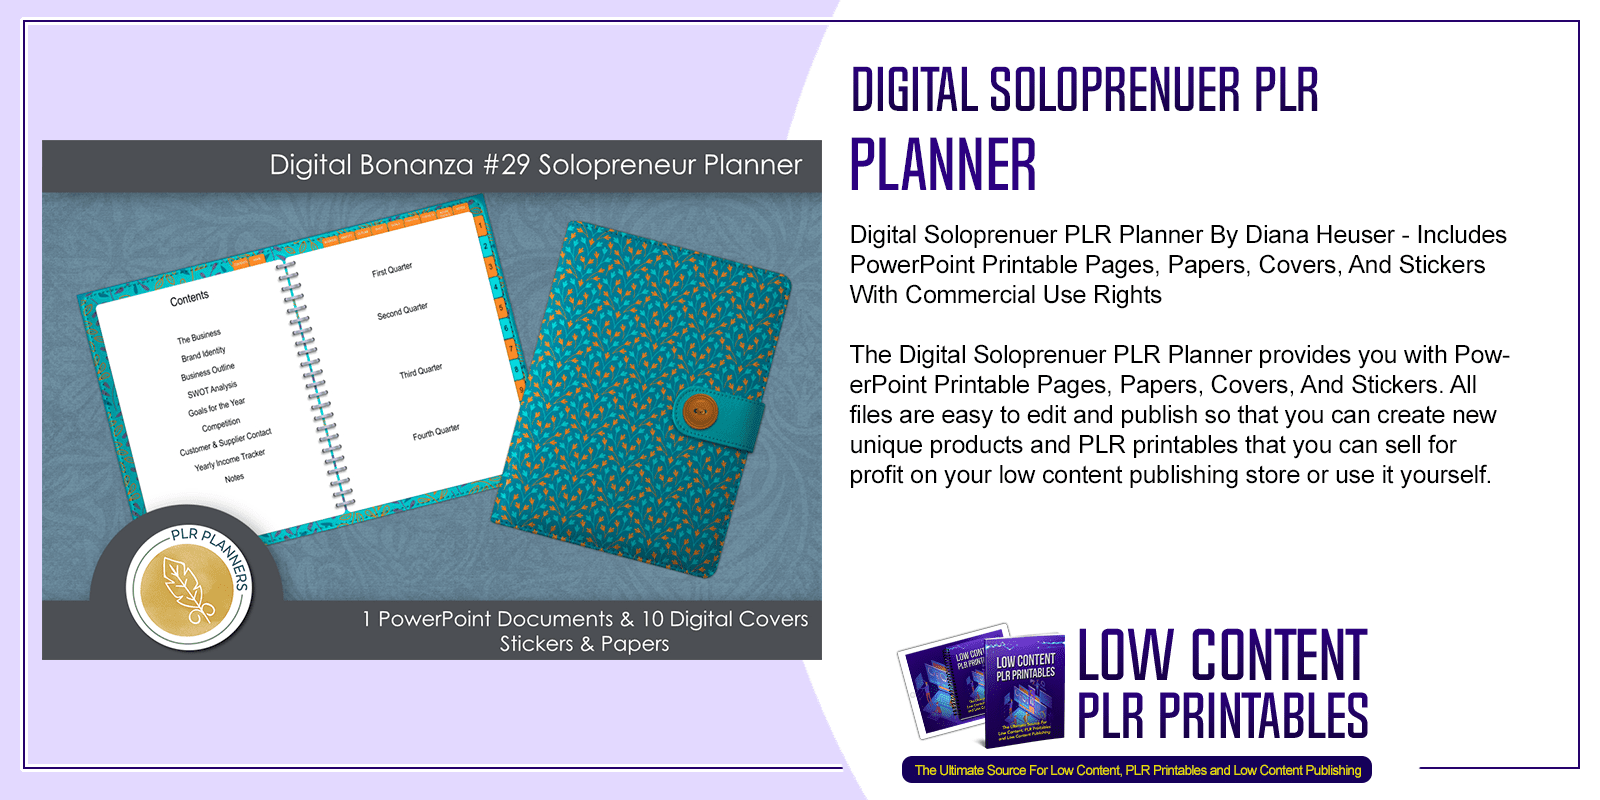 Digital Soloprenuer PLR Planner